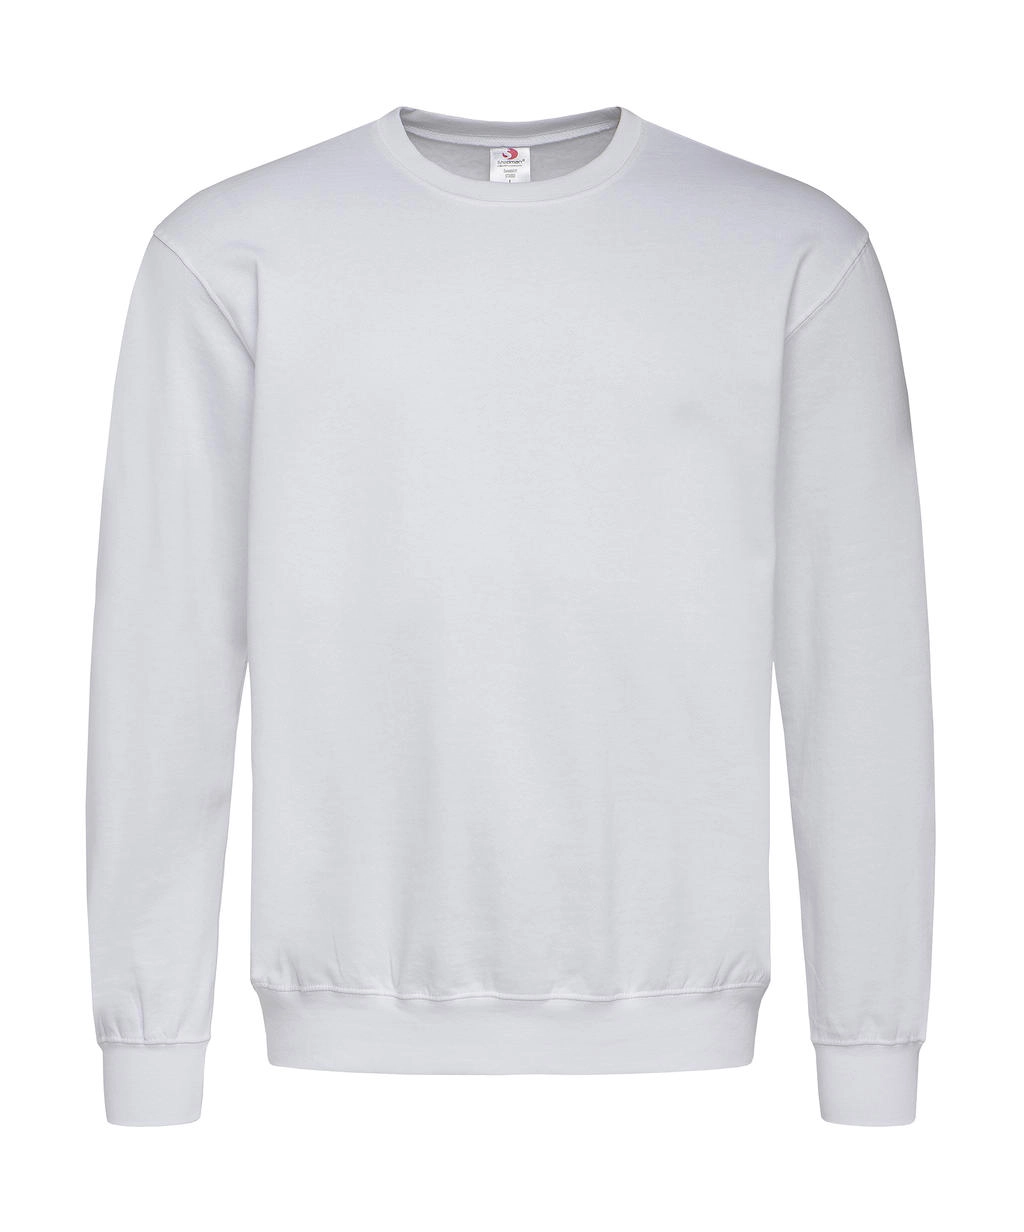 Unisex Sweatshirt Classic zum Besticken und Bedrucken in der Farbe White mit Ihren Logo, Schriftzug oder Motiv.